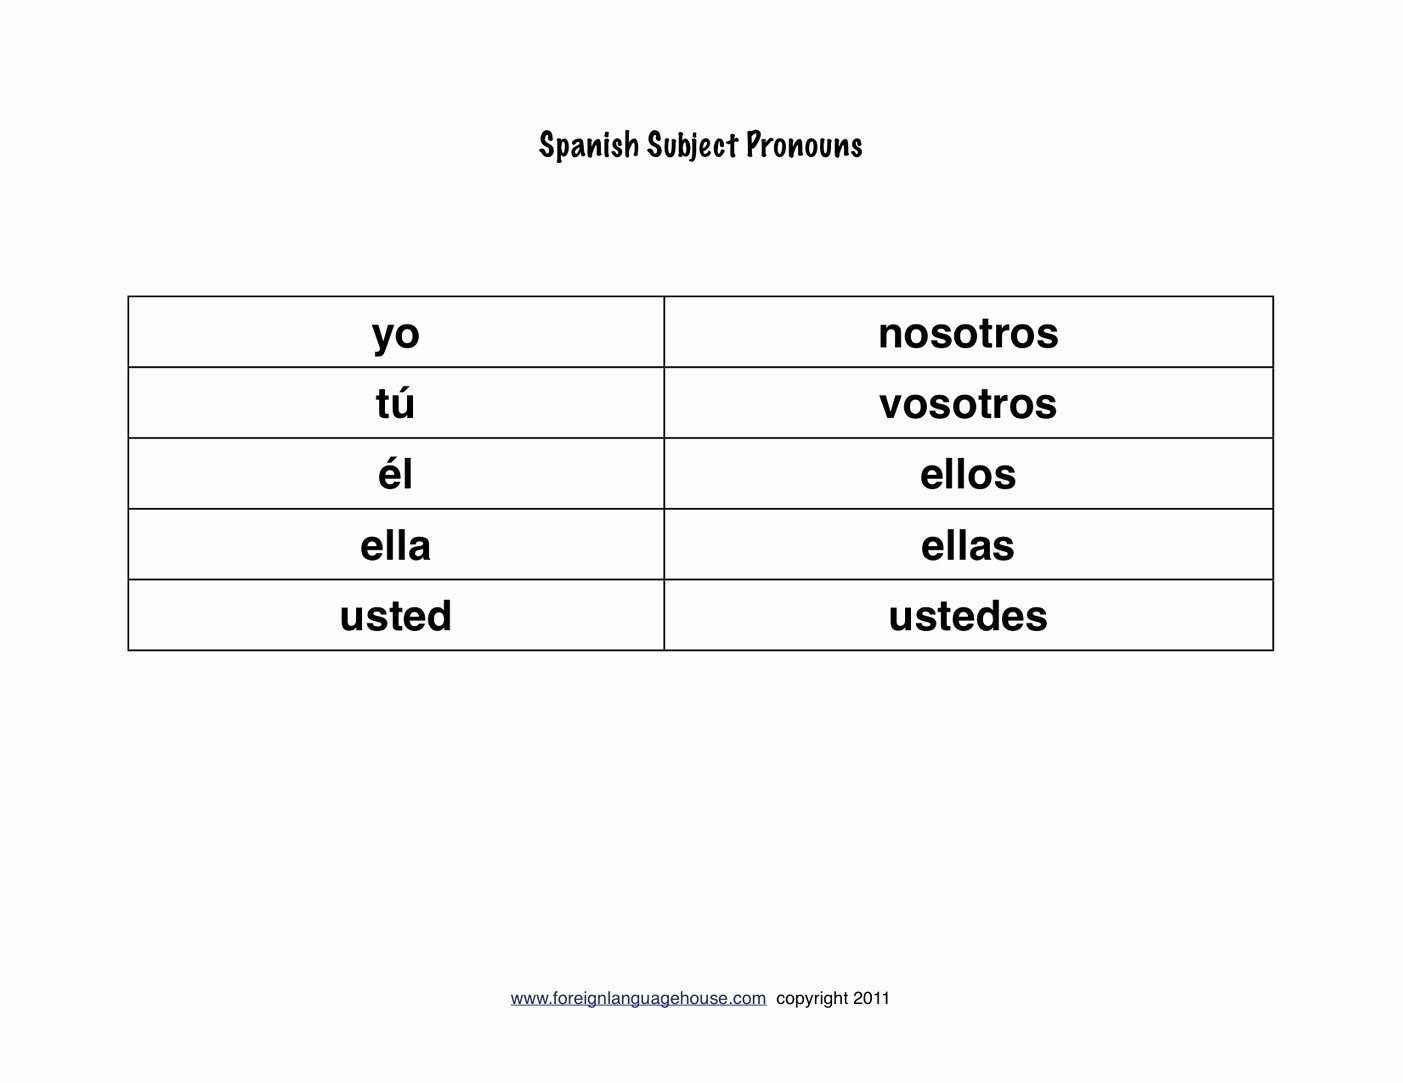 Subject Pronouns Spanish Worksheet Unique Worksheet Spanish Subject Pronouns Worksheet Grass Fedjp